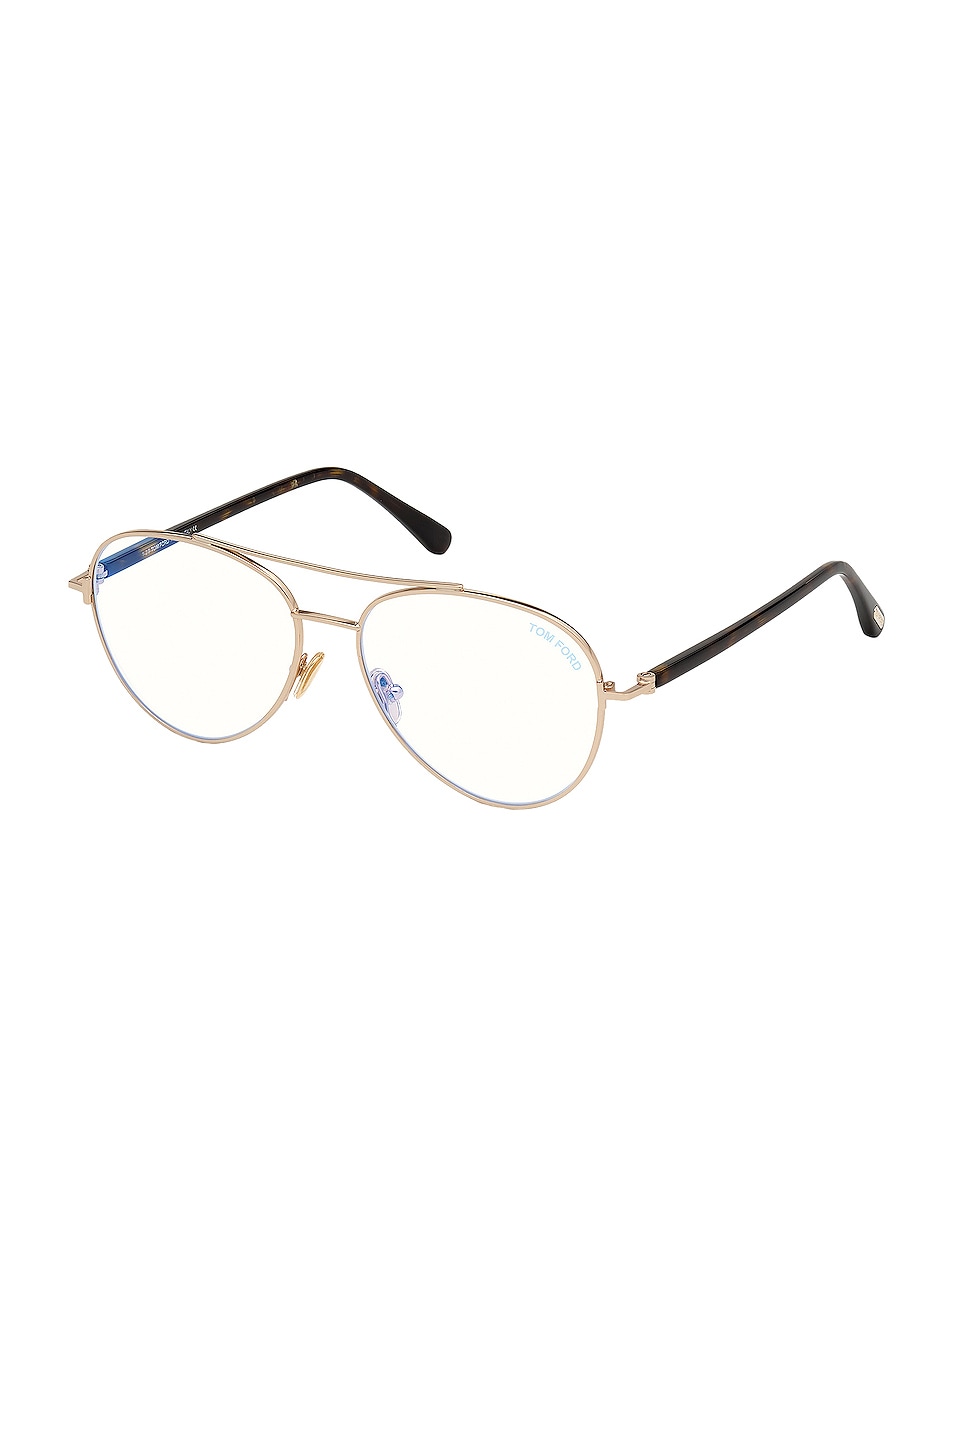 Image 1 of TOM FORD Aviator Optical Eyeglasses in Shiny Rose Gold, Dark Havana & Blue Block Lens